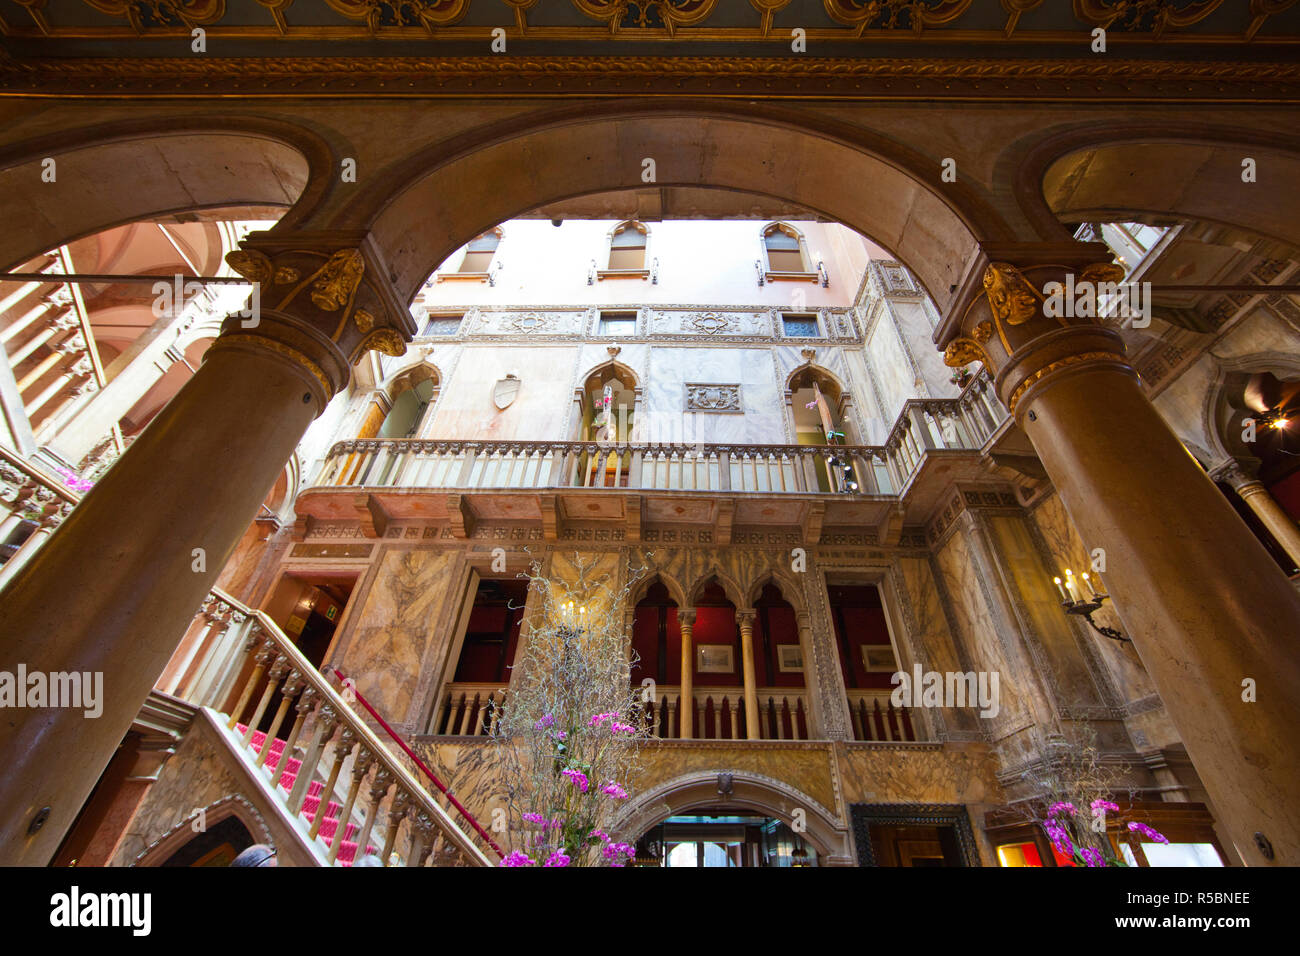 Atrium dans l'hôtel Danieli, Venise, Italie Banque D'Images